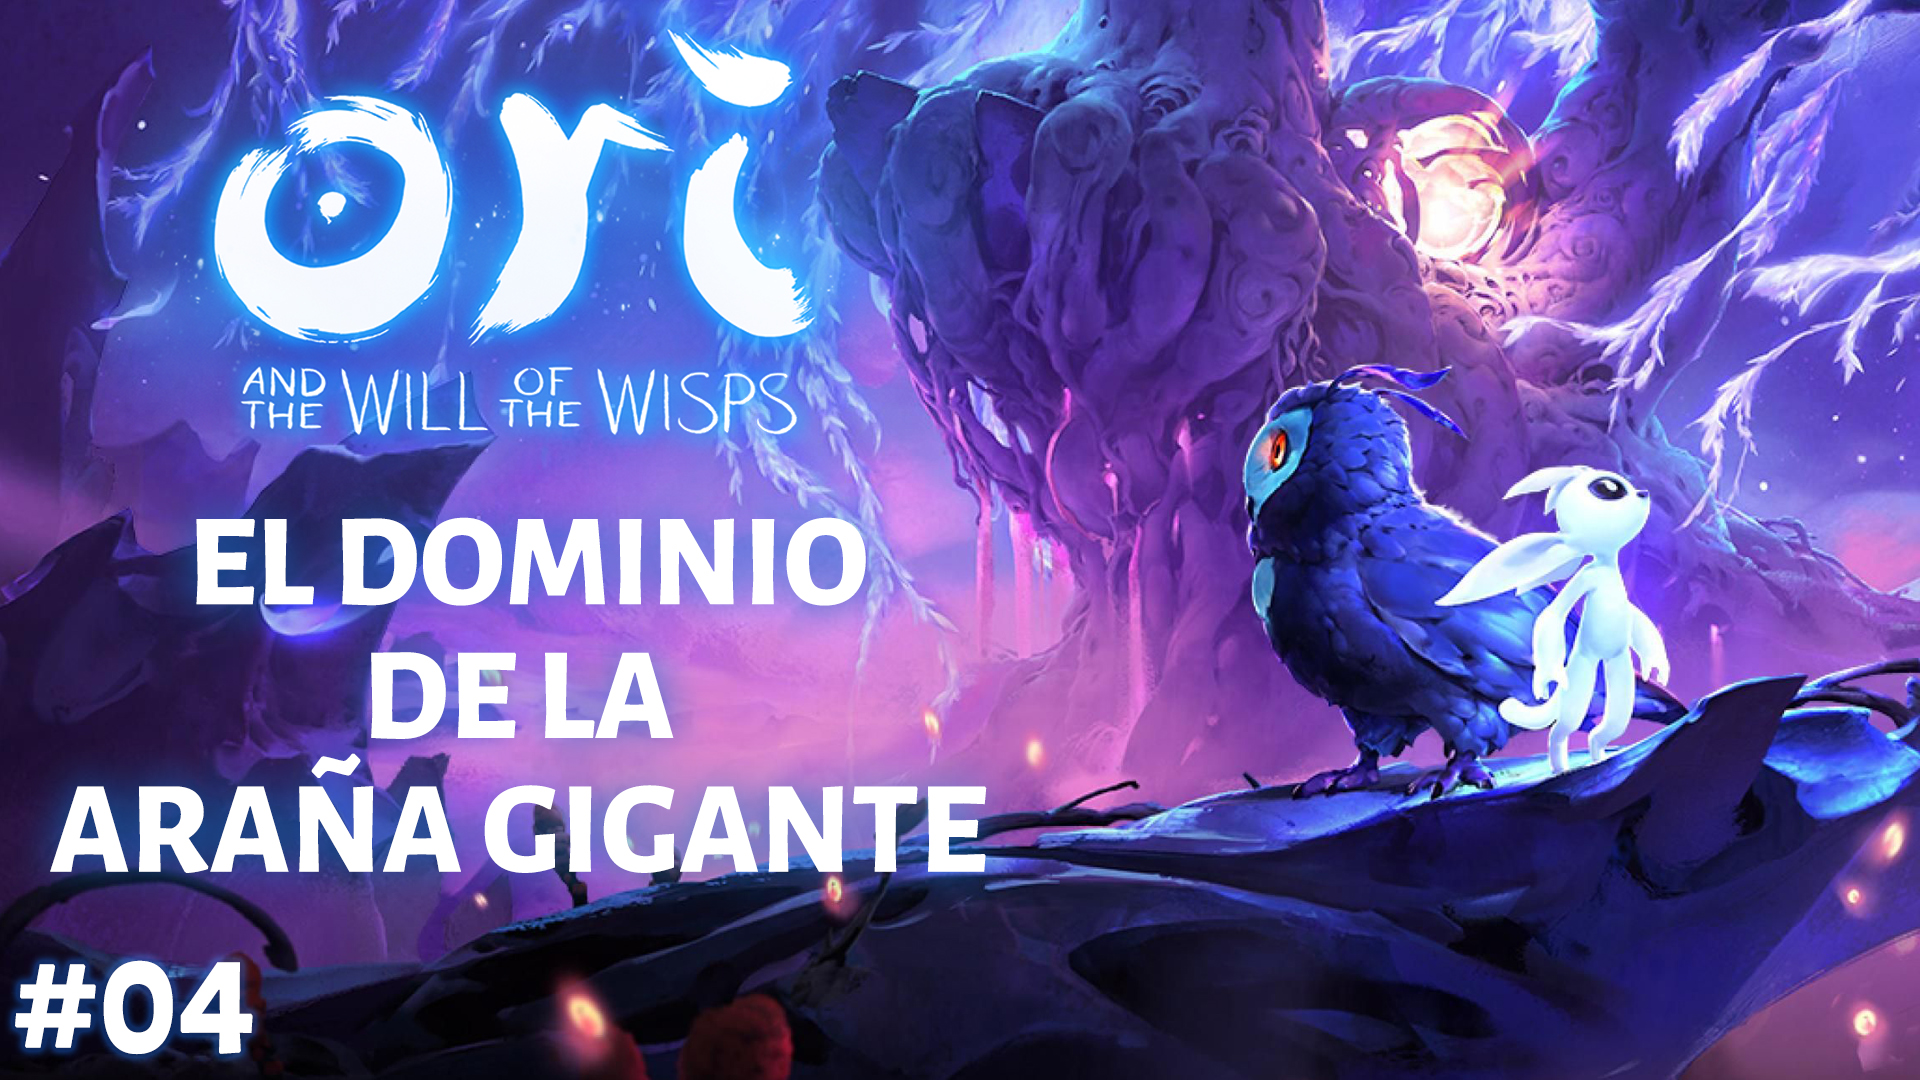 Serie Ori and the Will of the Wisps #04 – El dominio de la araña gigante